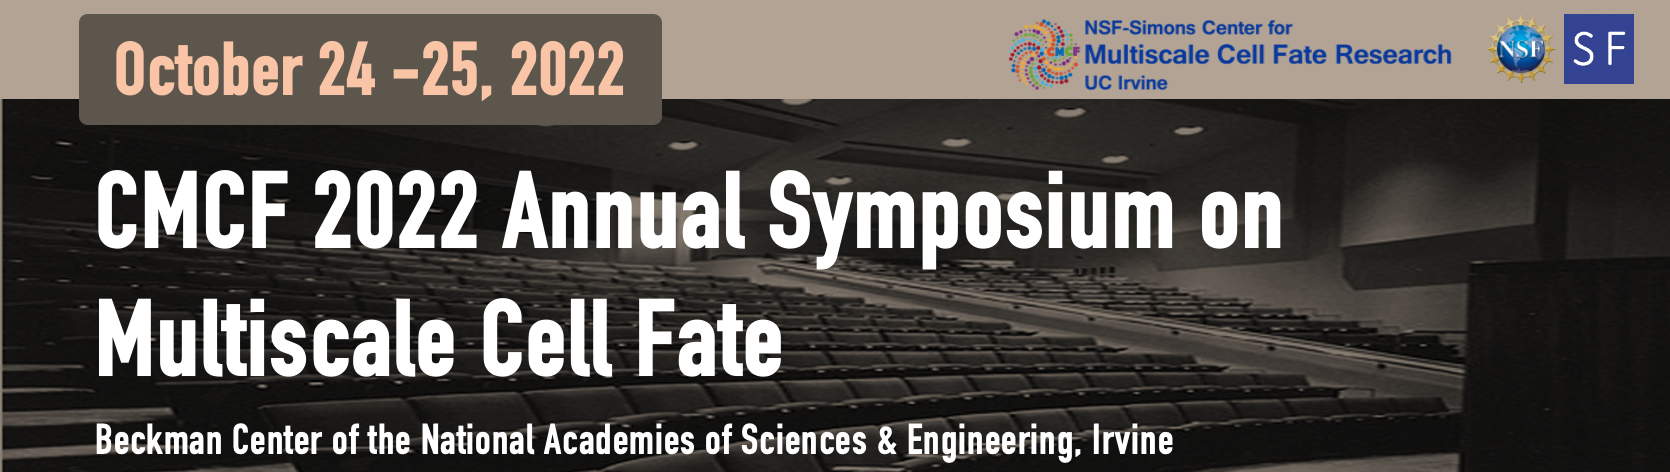 2022 CMCF Annual Symposium